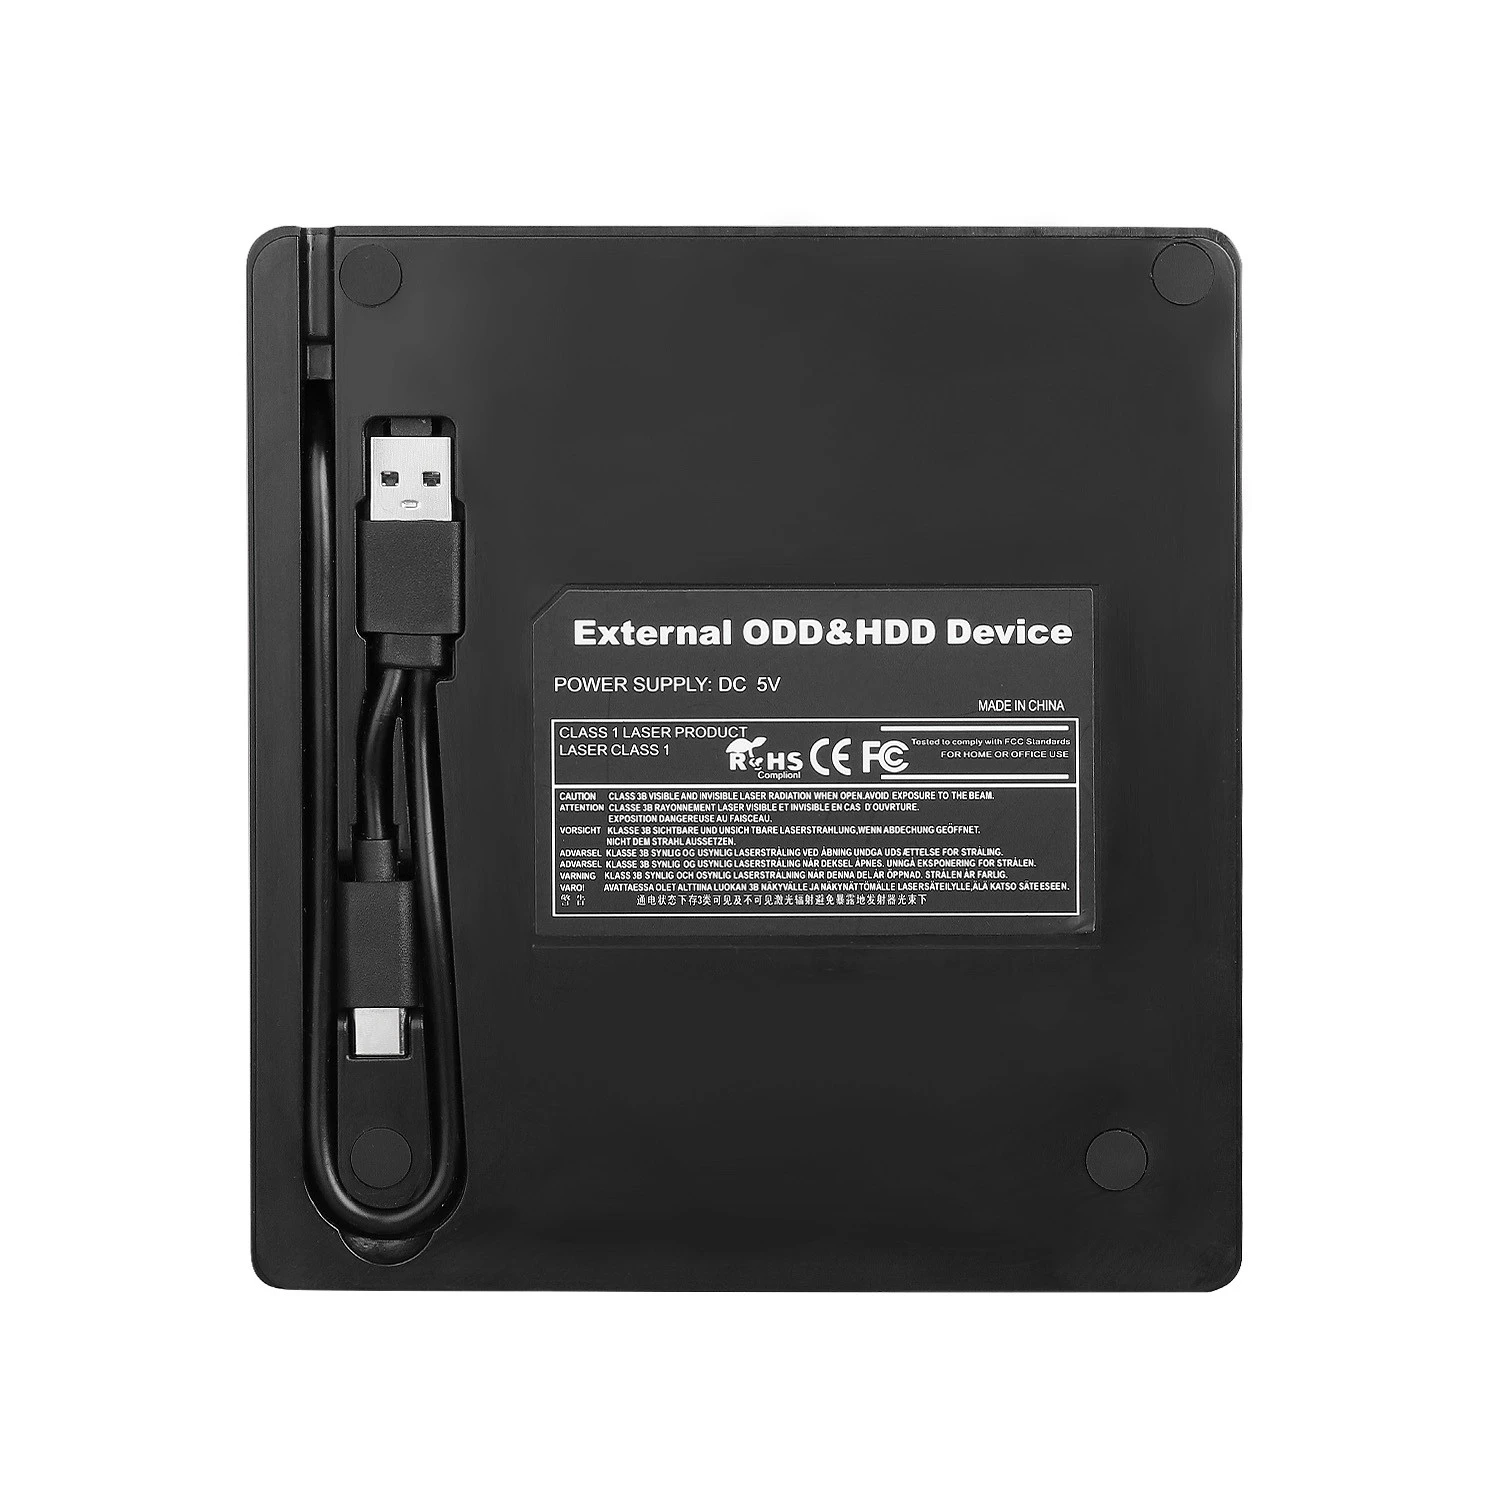 ePro External DVD ROM Optical Drive USB 3.0 CD/DVD-ROM CD-RW Player EDD13 Burner Slim Portable Reader Recorder for iMac Lapt